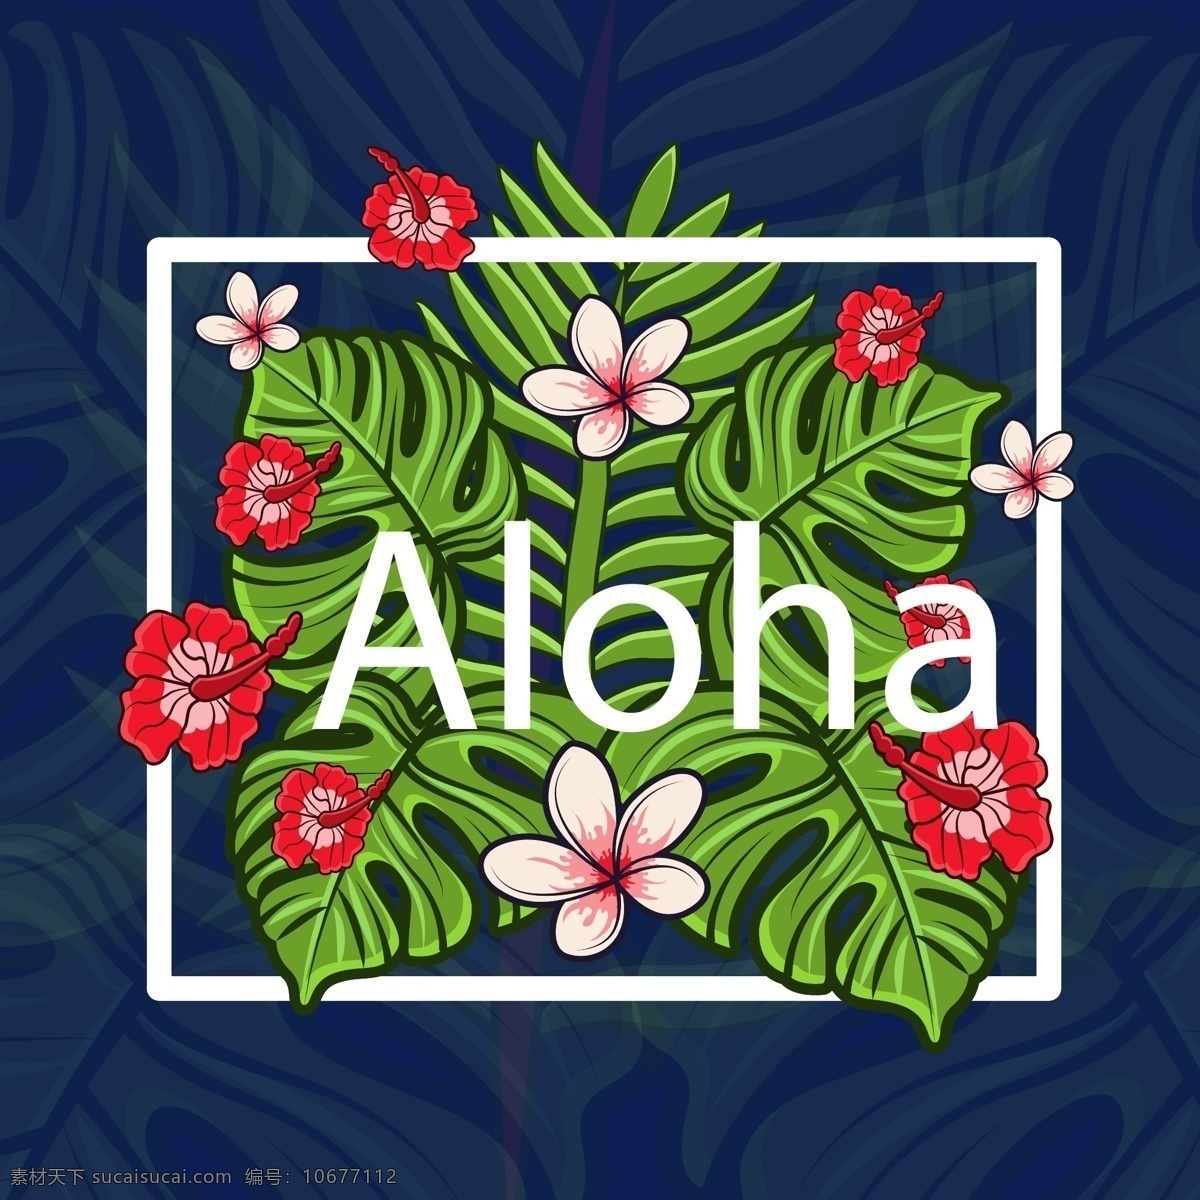 彩色 夏威夷 热带 花卉 树叶 矢量 唯美 插画 花朵 清新 植物